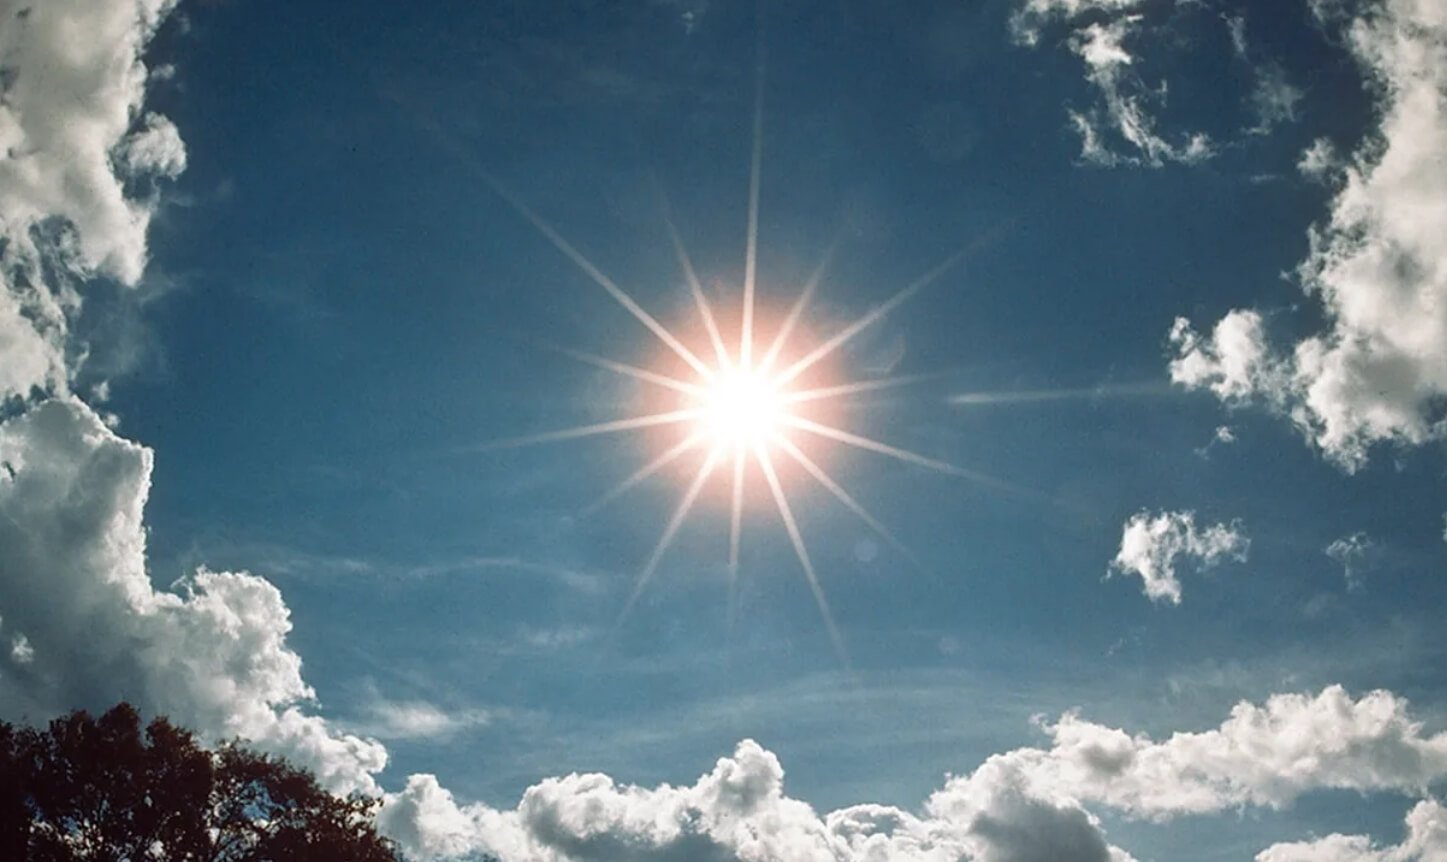 Как выглядит Солнце и его полюса с близкого расстояния?